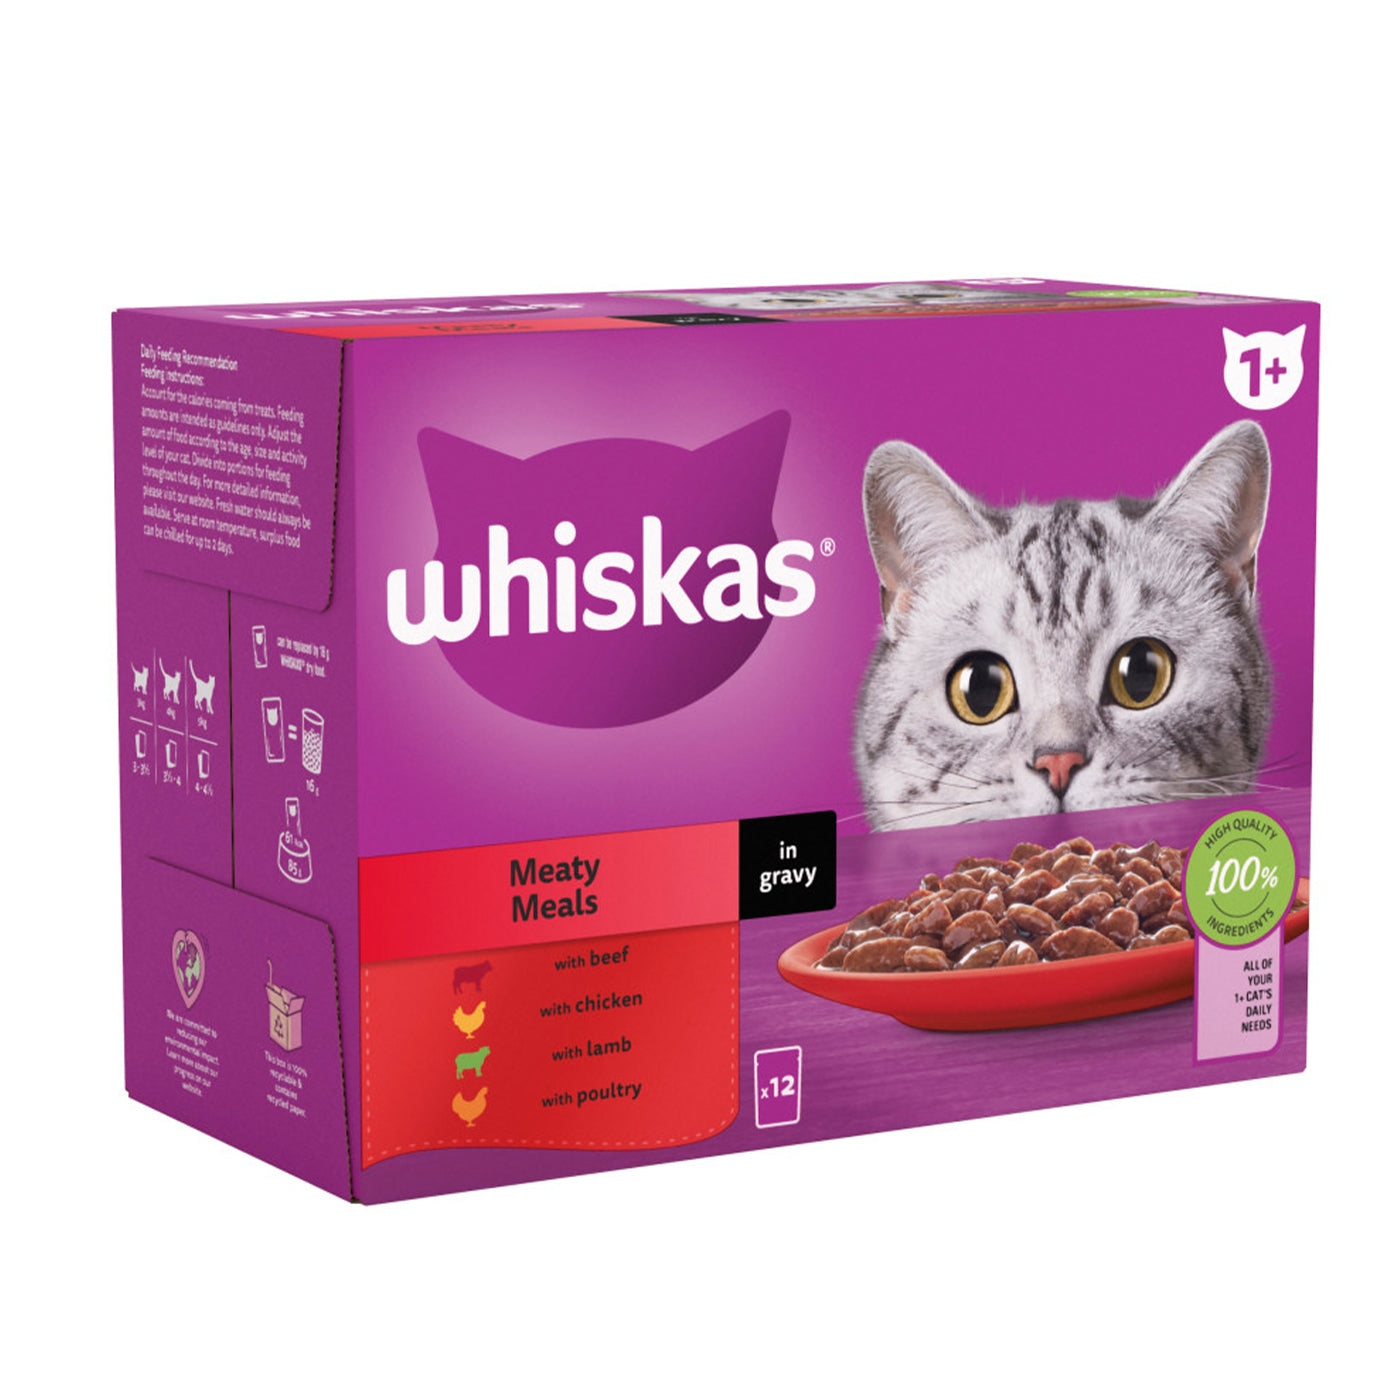 Whiskas 1+ Cat Meaty Meals in Gravy (12x85g)